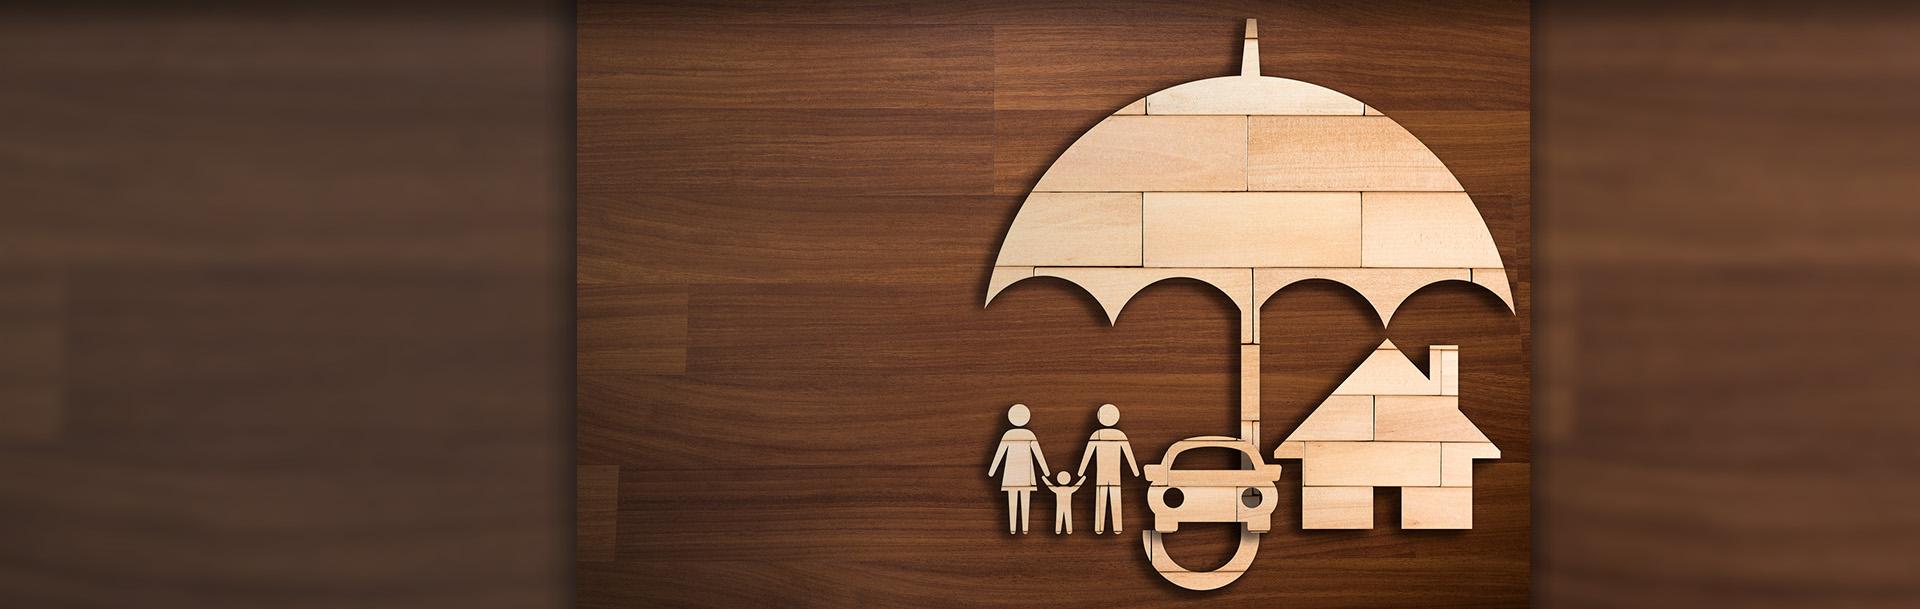 Slajd #2 - ikonka rodziny pod parasolem